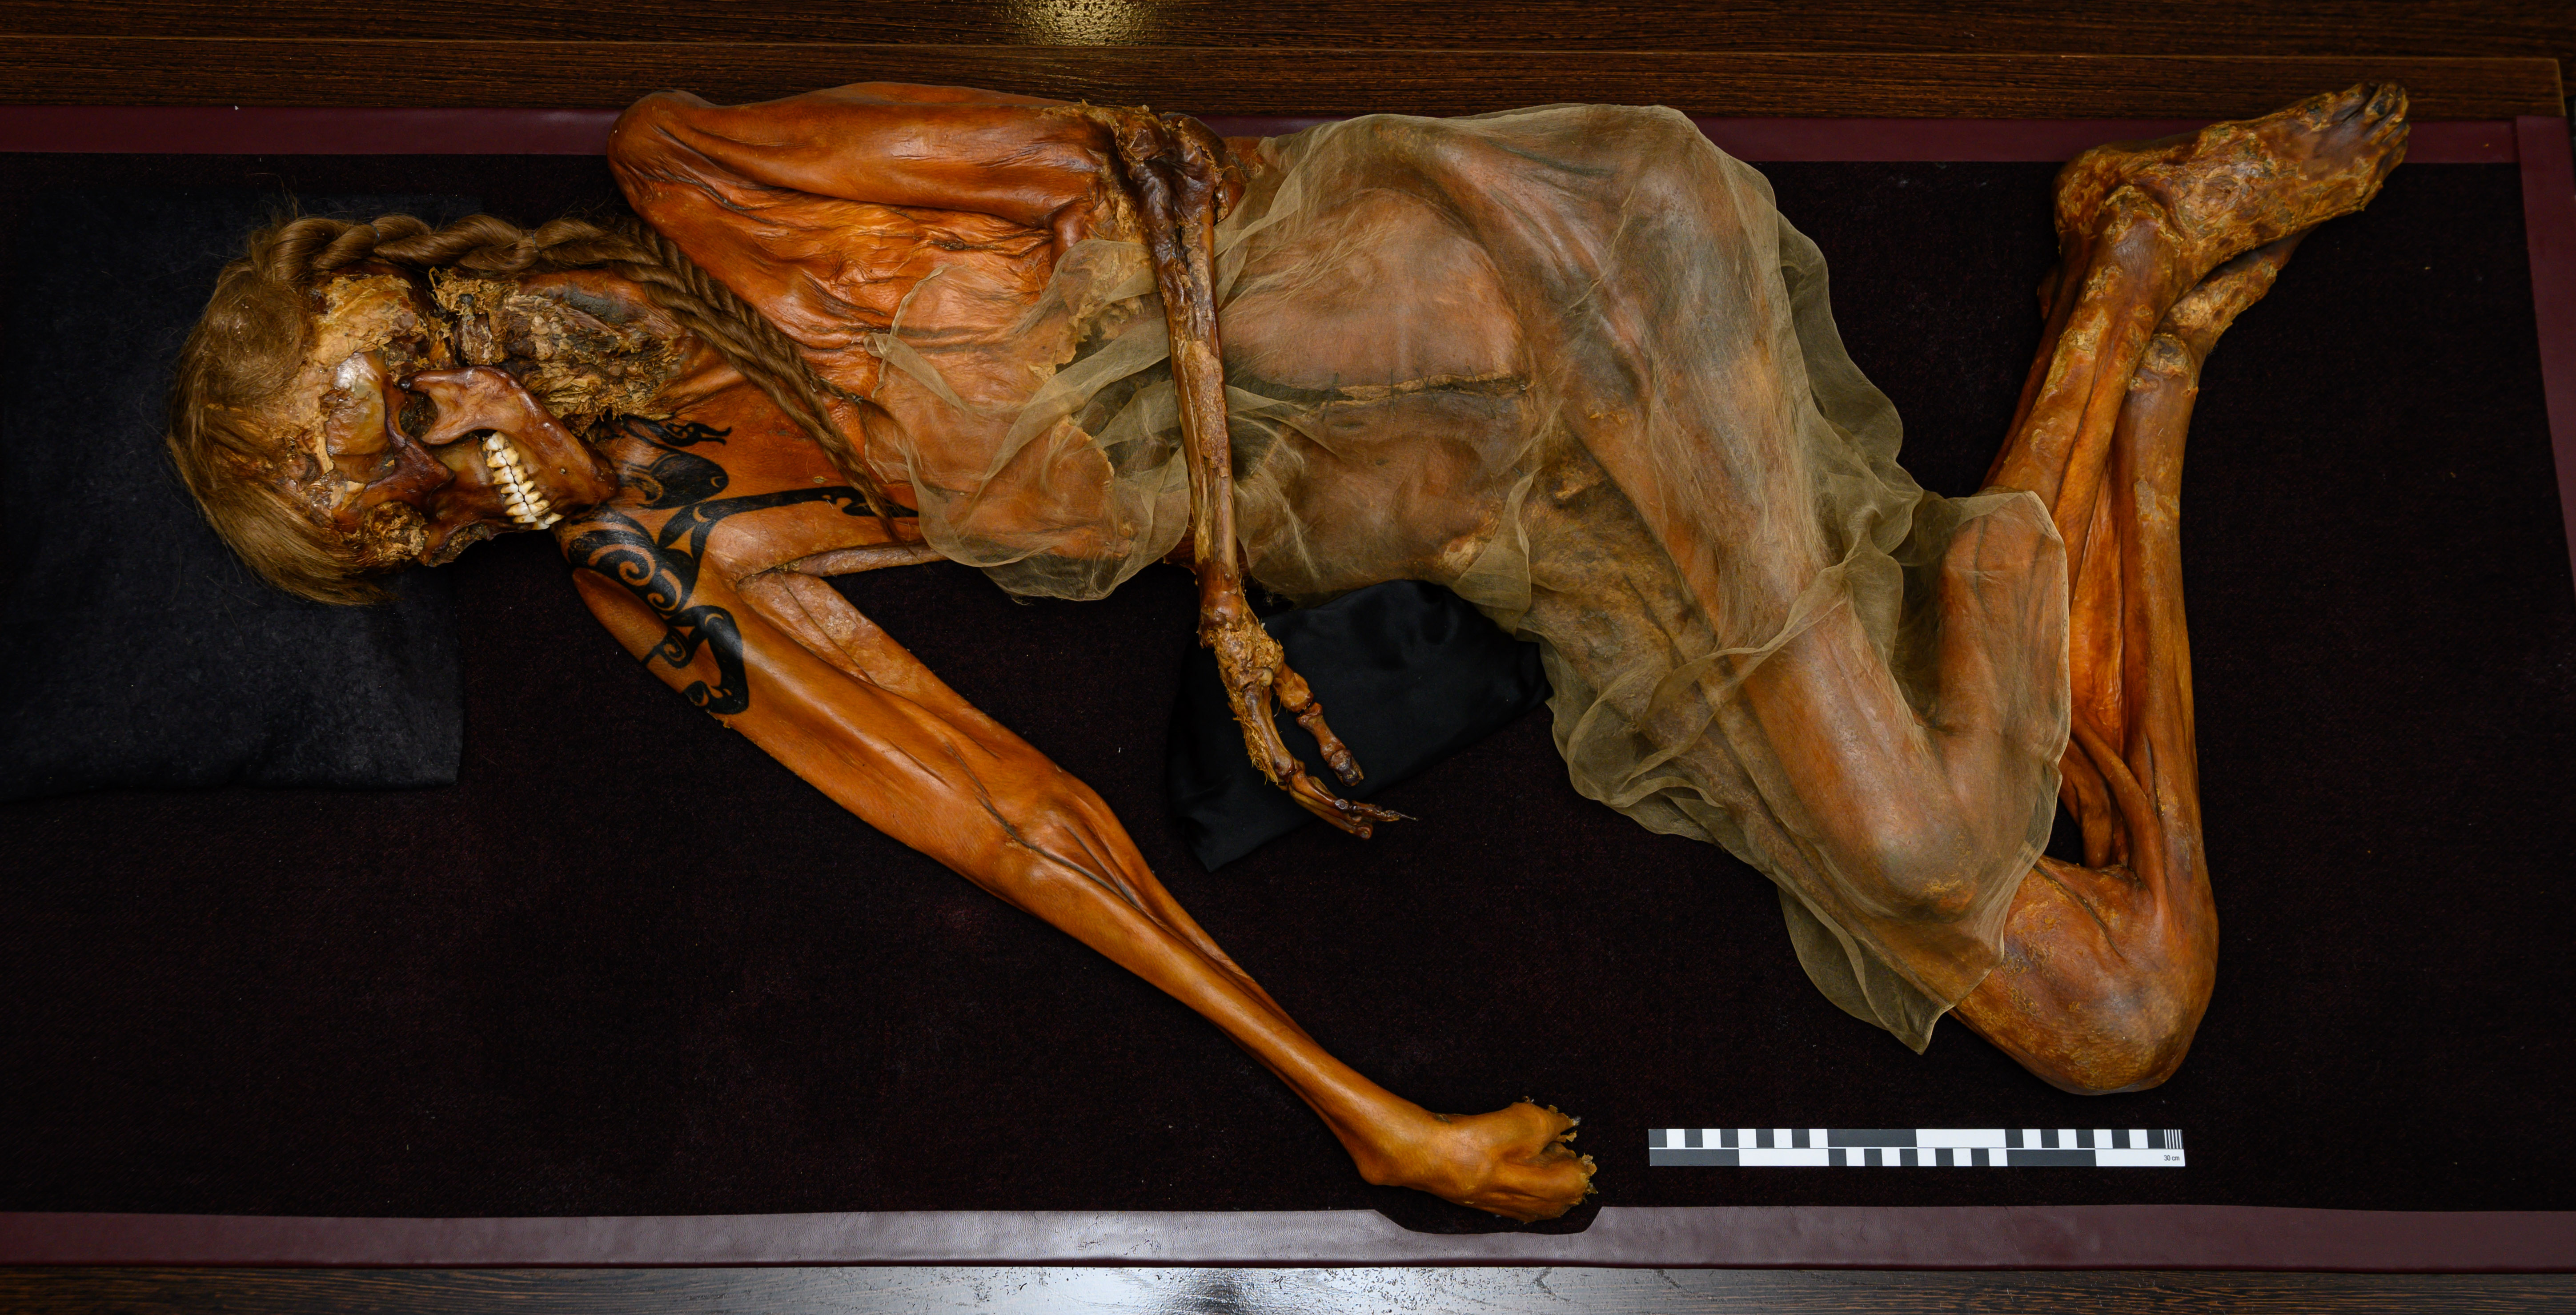 Männliche Mumie, auf der Seite liegend. Tätowierungen am Arm sind zu erkennen, auch Reste von hellen Haaren am Schädel